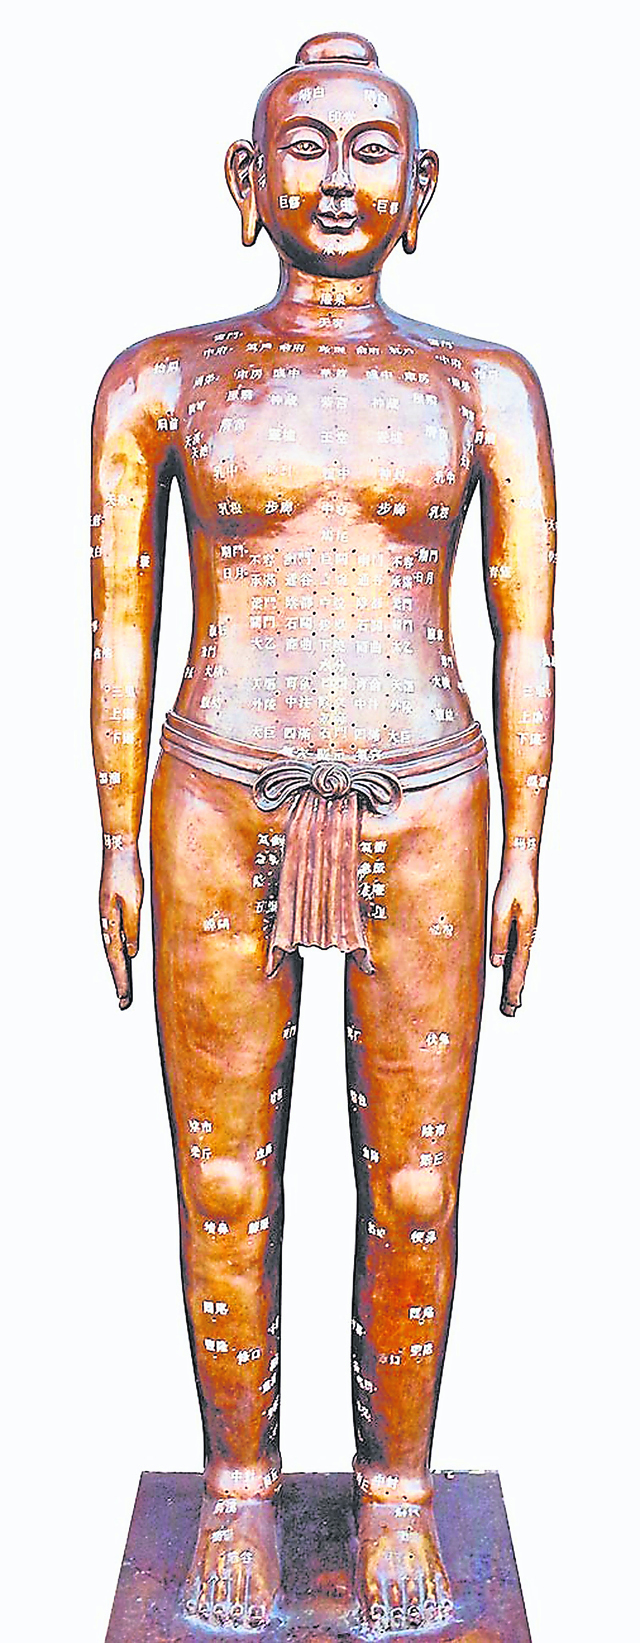 针灸铜人，也称为“经络通人”，是形象直观的针灸穴位模型。